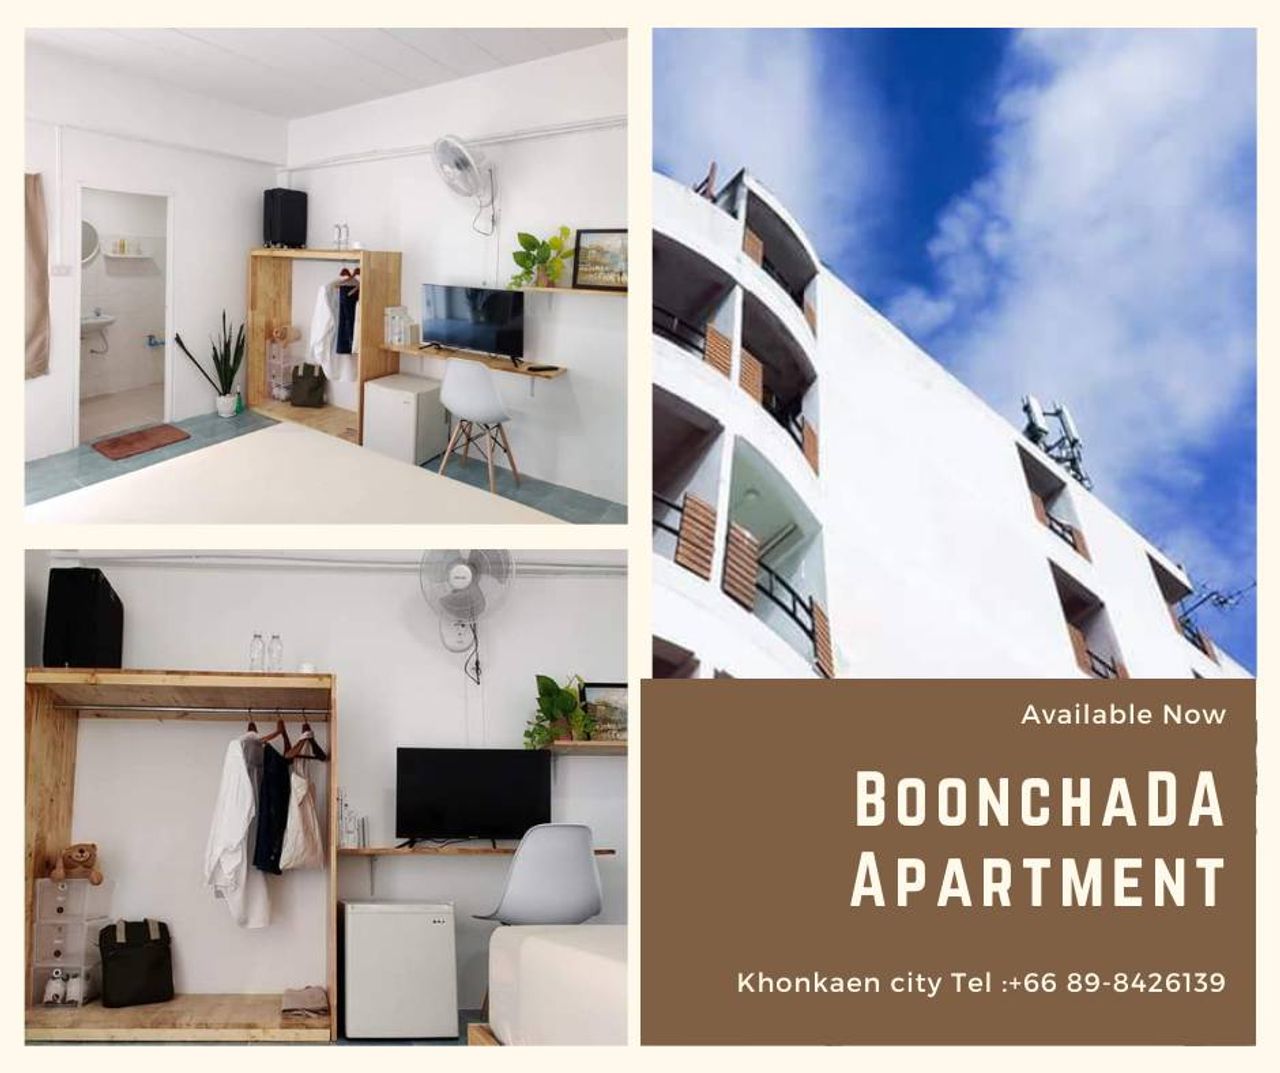 รูปภาพเพิ่มเติม บุญชฎาอพาร์ทเม้นท์ - Boonchada-Apartment-หอพักขอนแก่น-ใกล้ตลาดจอมพล-บึงทุ่งสร้าง - ลำดับที่ 1